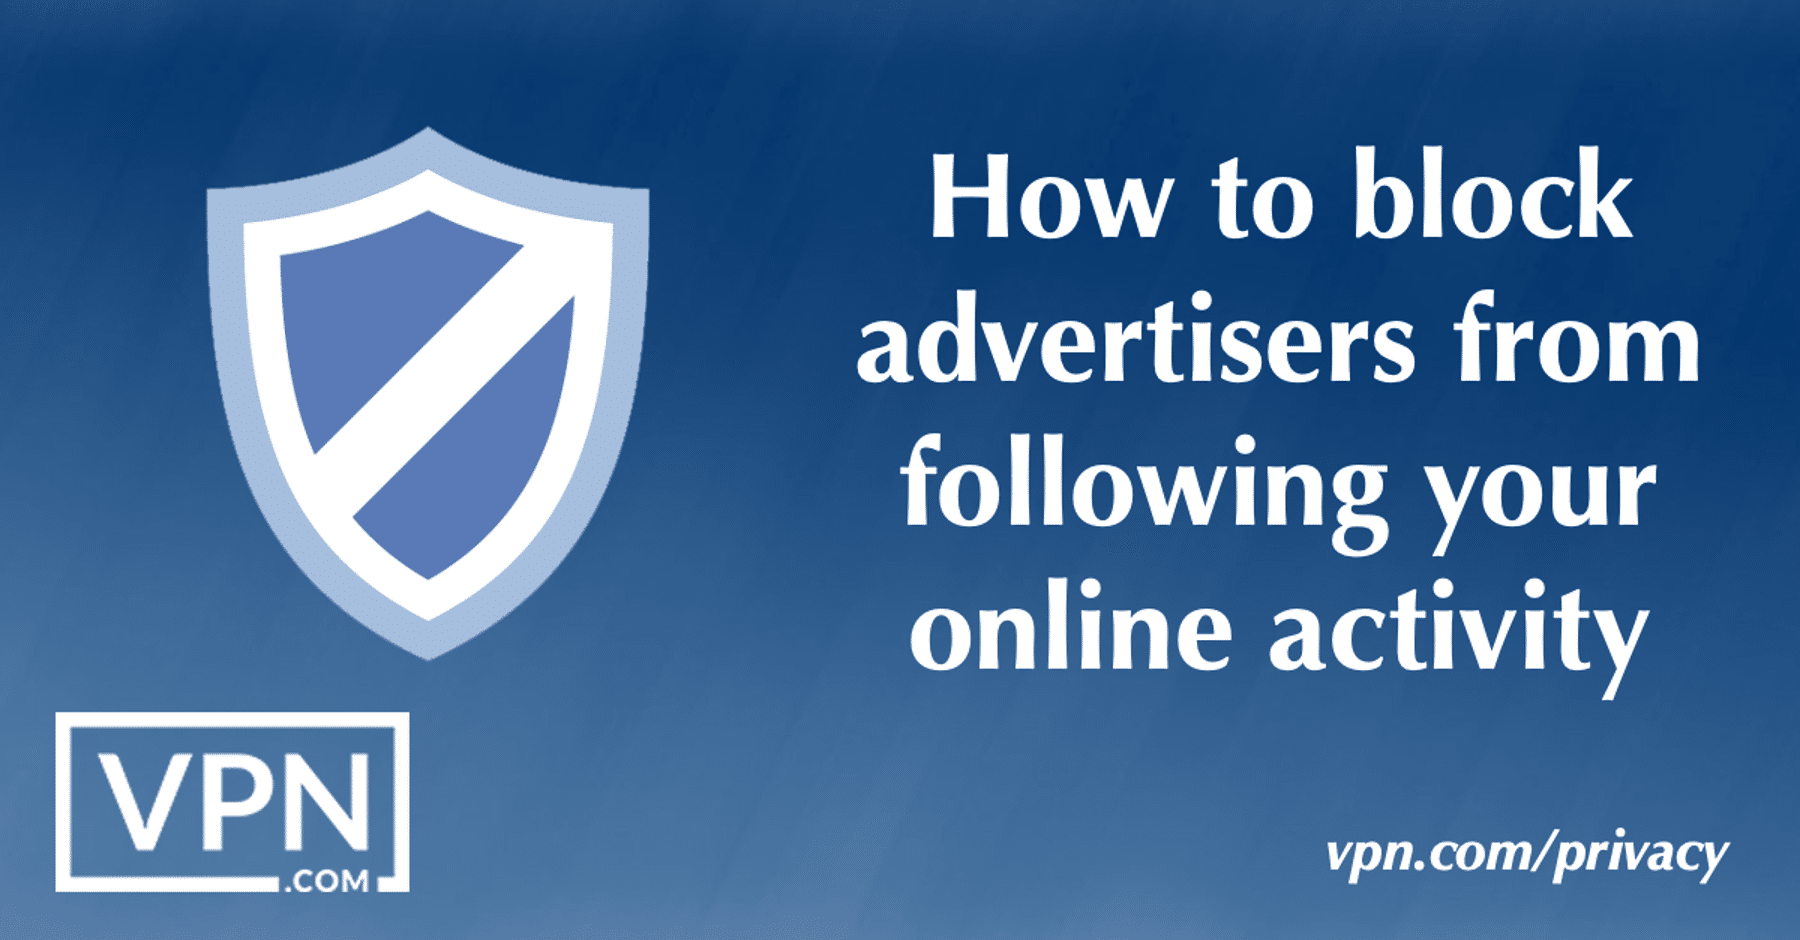 Kā bloķēt reklāmdevējus, lai tie nevarētu sekot jūsu darbībām tiešsaistē.